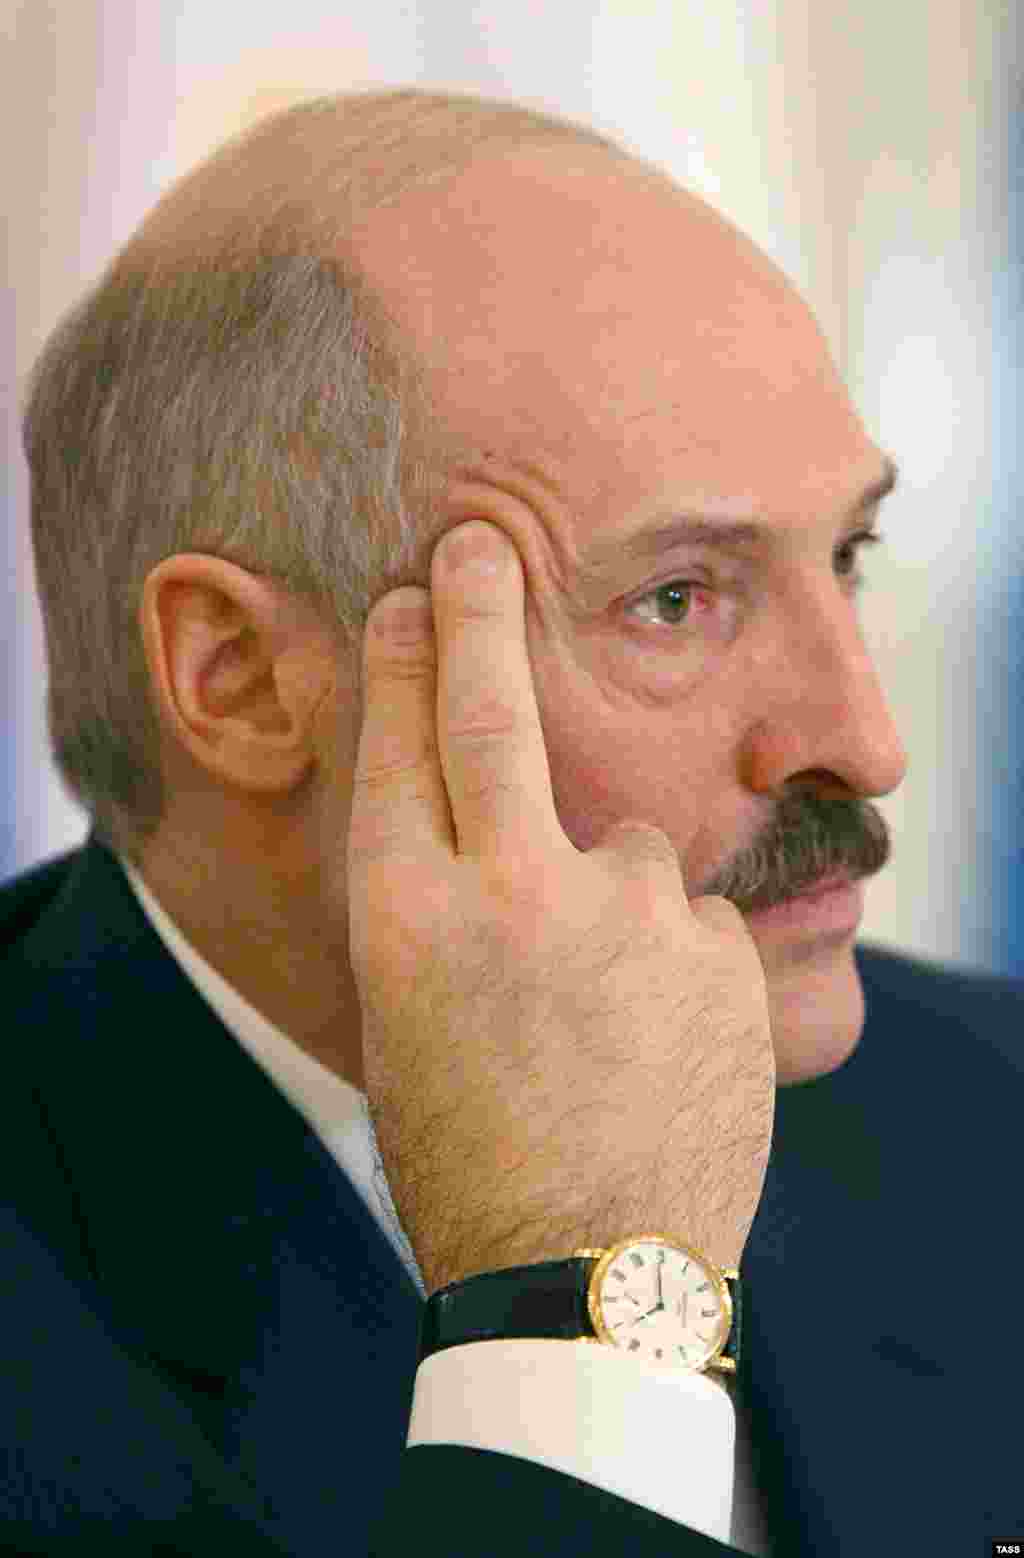 &quot;Бережливый&quot; президент Беларуси Александр Лукашенко, вероятно, задумался, стоит ли ему купить еще одни часы за $17 тыс.&nbsp; Источник: оппозиционная инициатива Хартия&#39;97